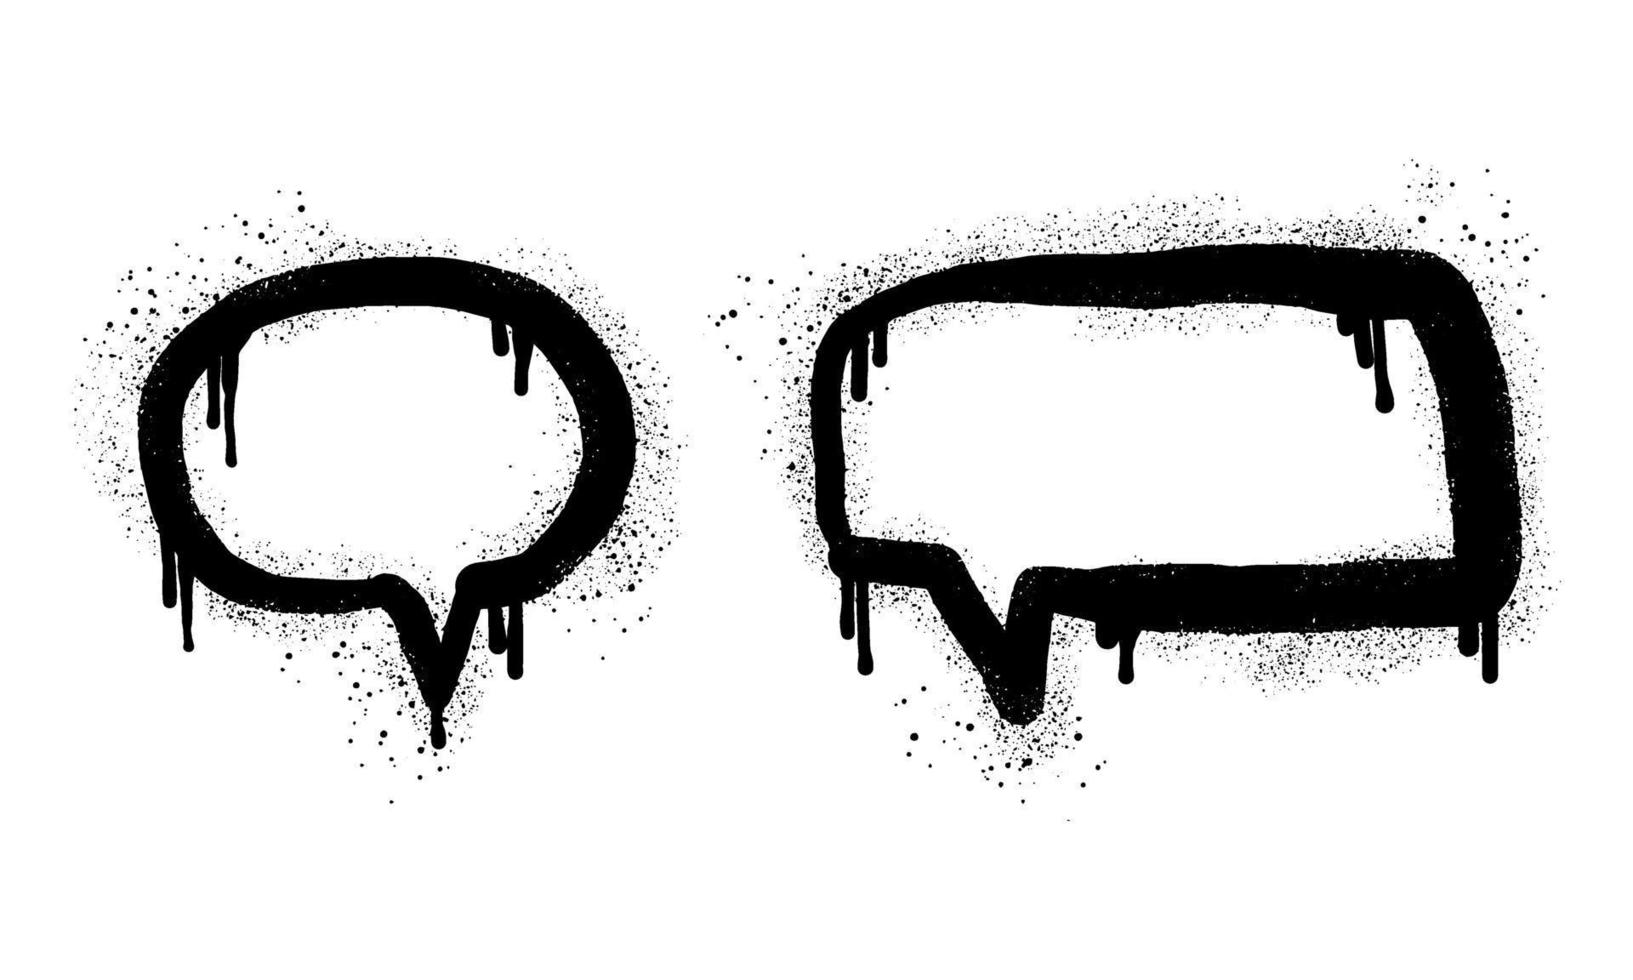 ensemble de bulles de discours graffiti peintes à la bombe en noir sur blanc. symbole de goutte à goutte de bulle. isolé sur fond blanc. illustration vectorielle vecteur